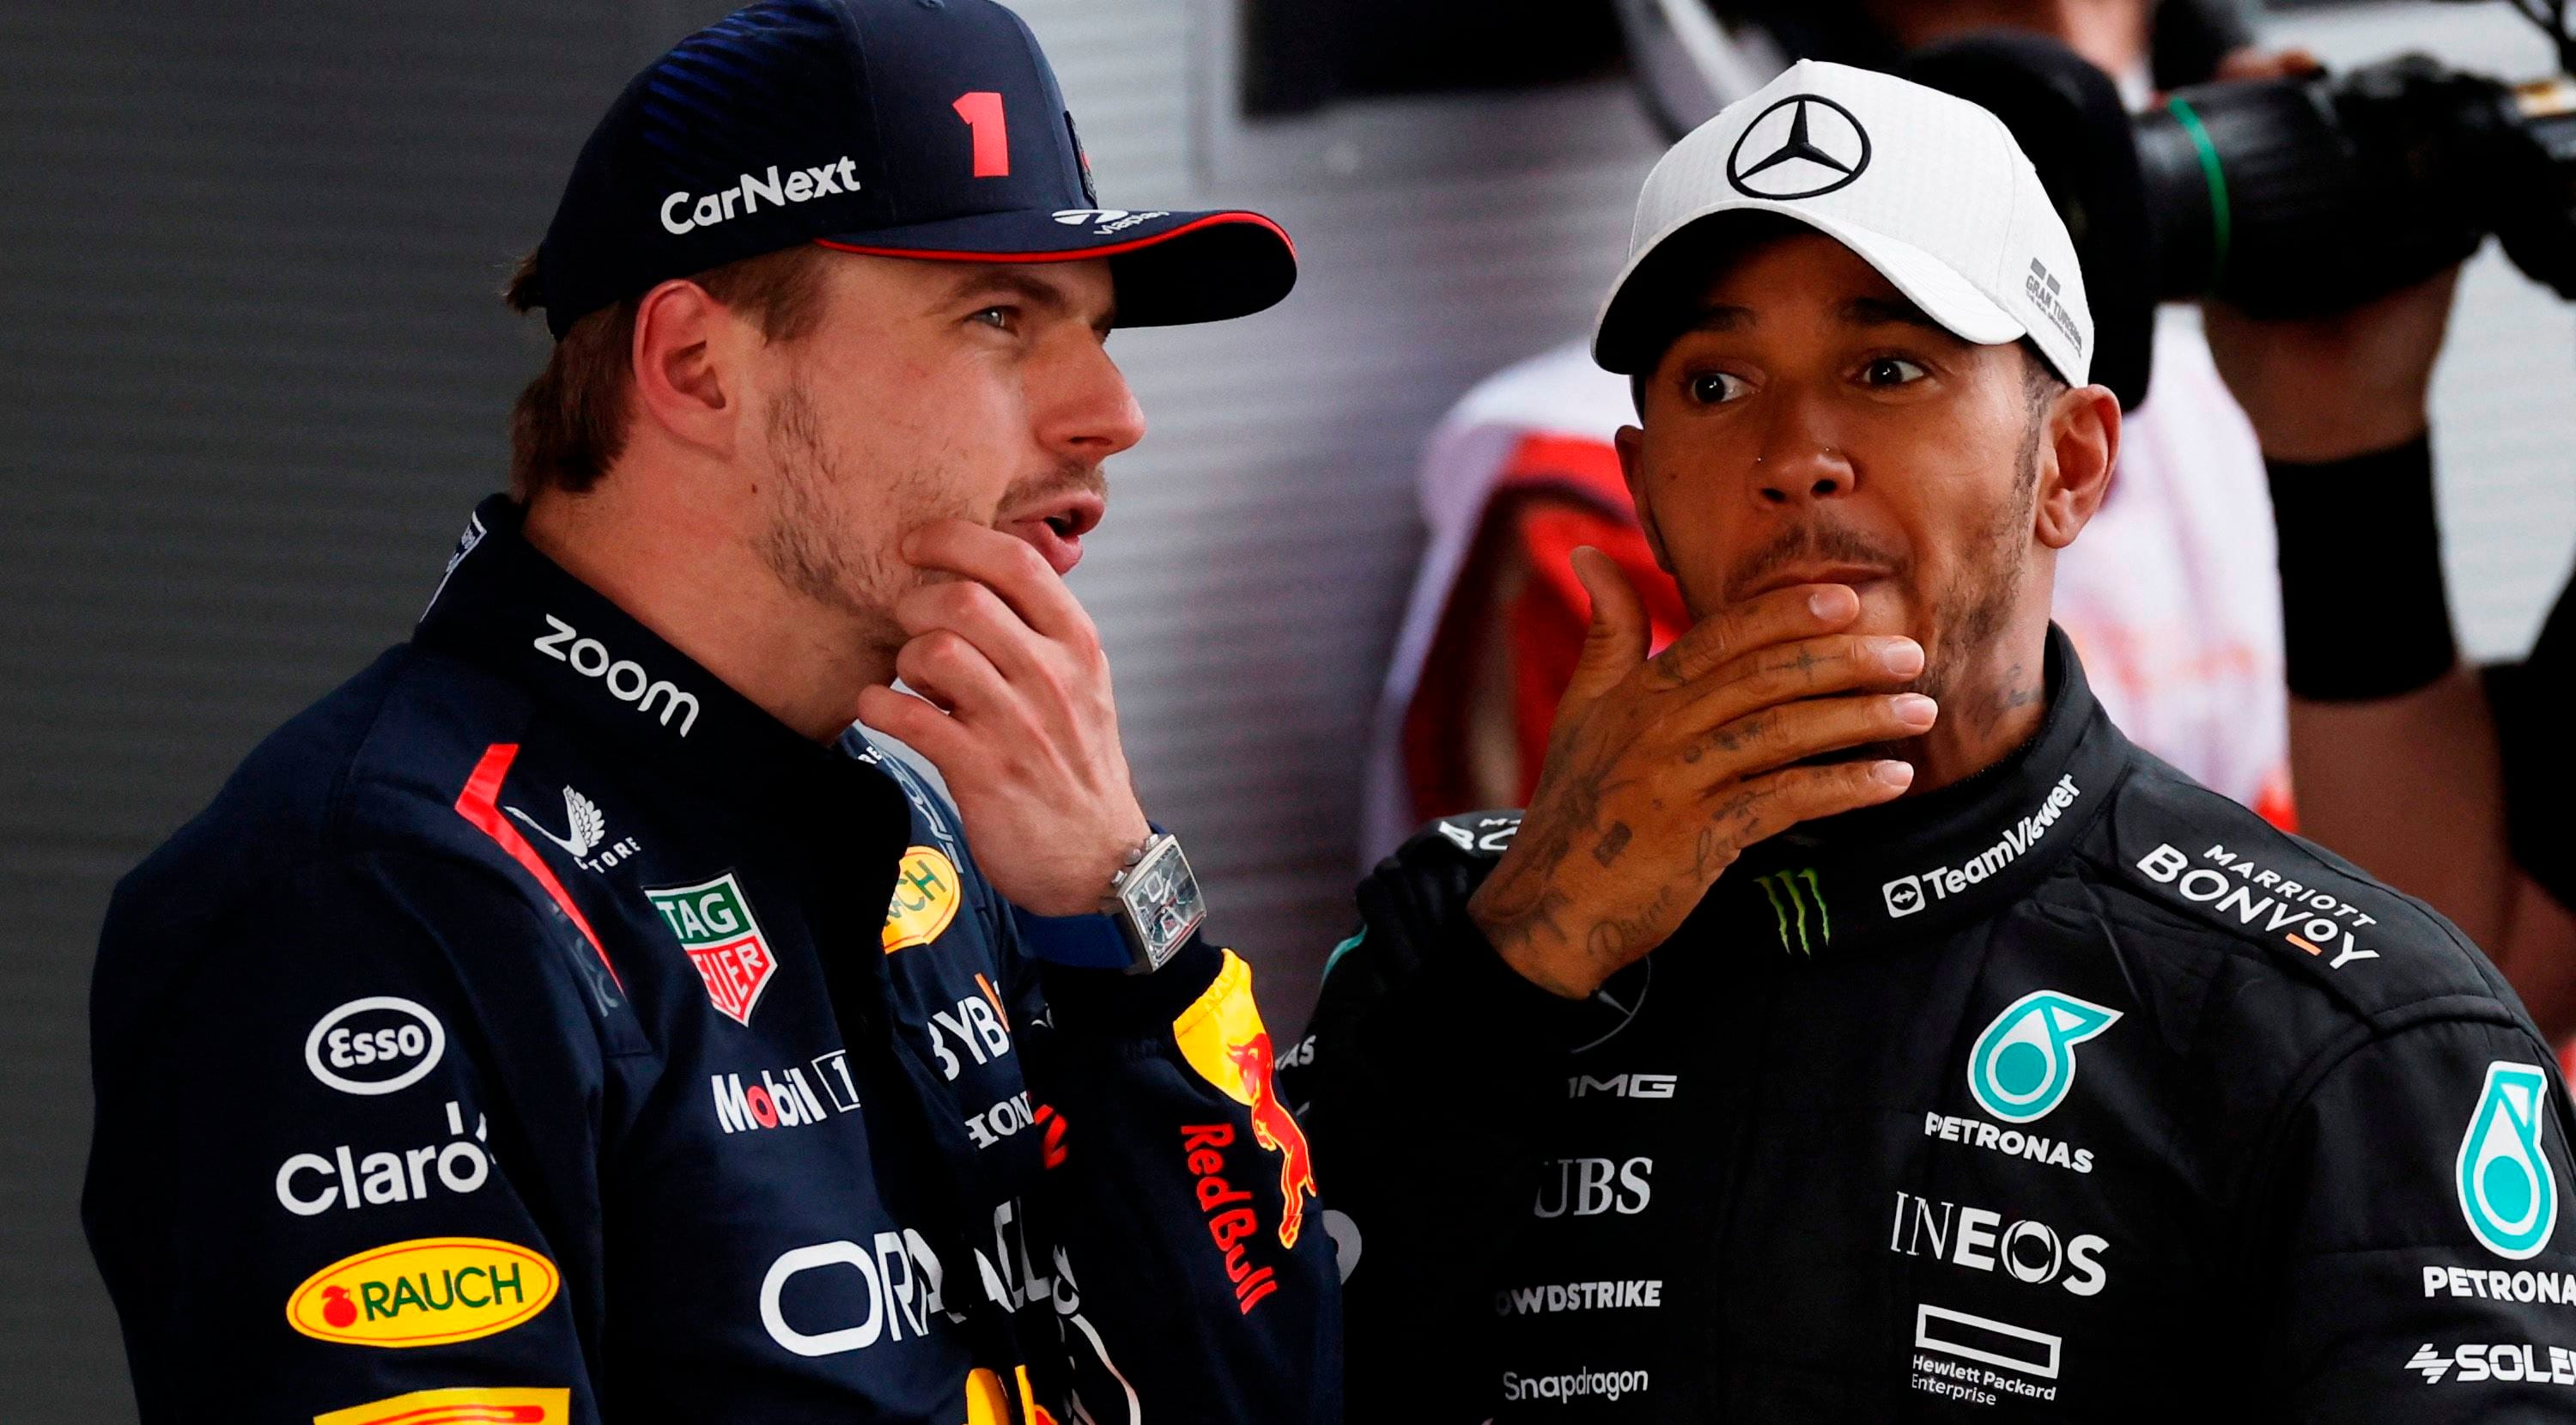 Hamilton jugó fuerte en sus últimas declaraciones respecto de Verstappen, Checo Pérez y Red Bull